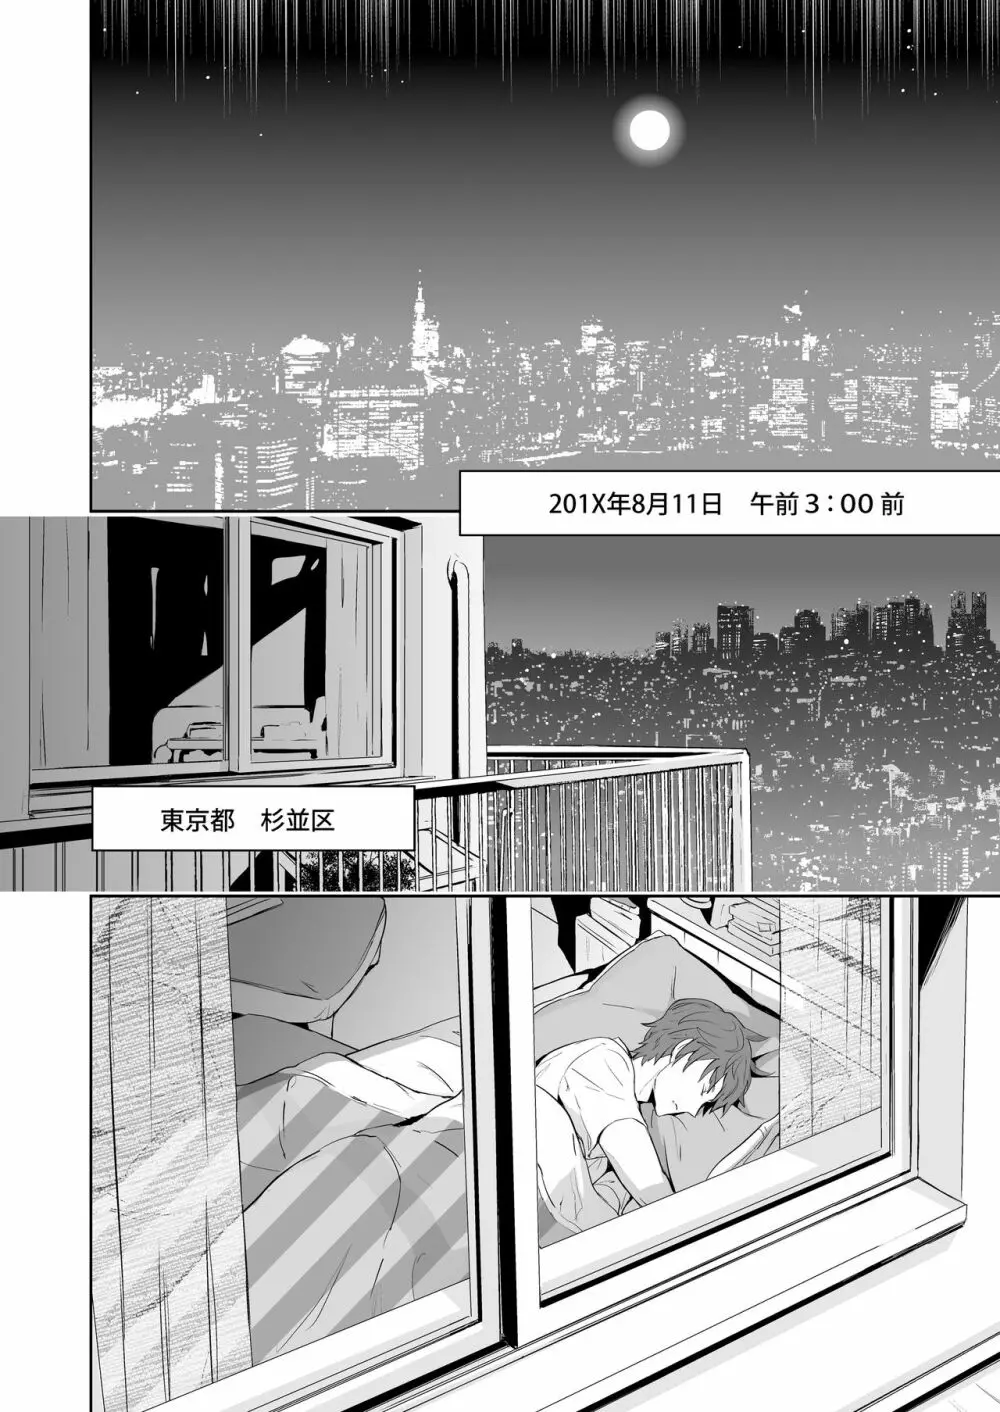 Traumatic Phantasm #02 Page.6